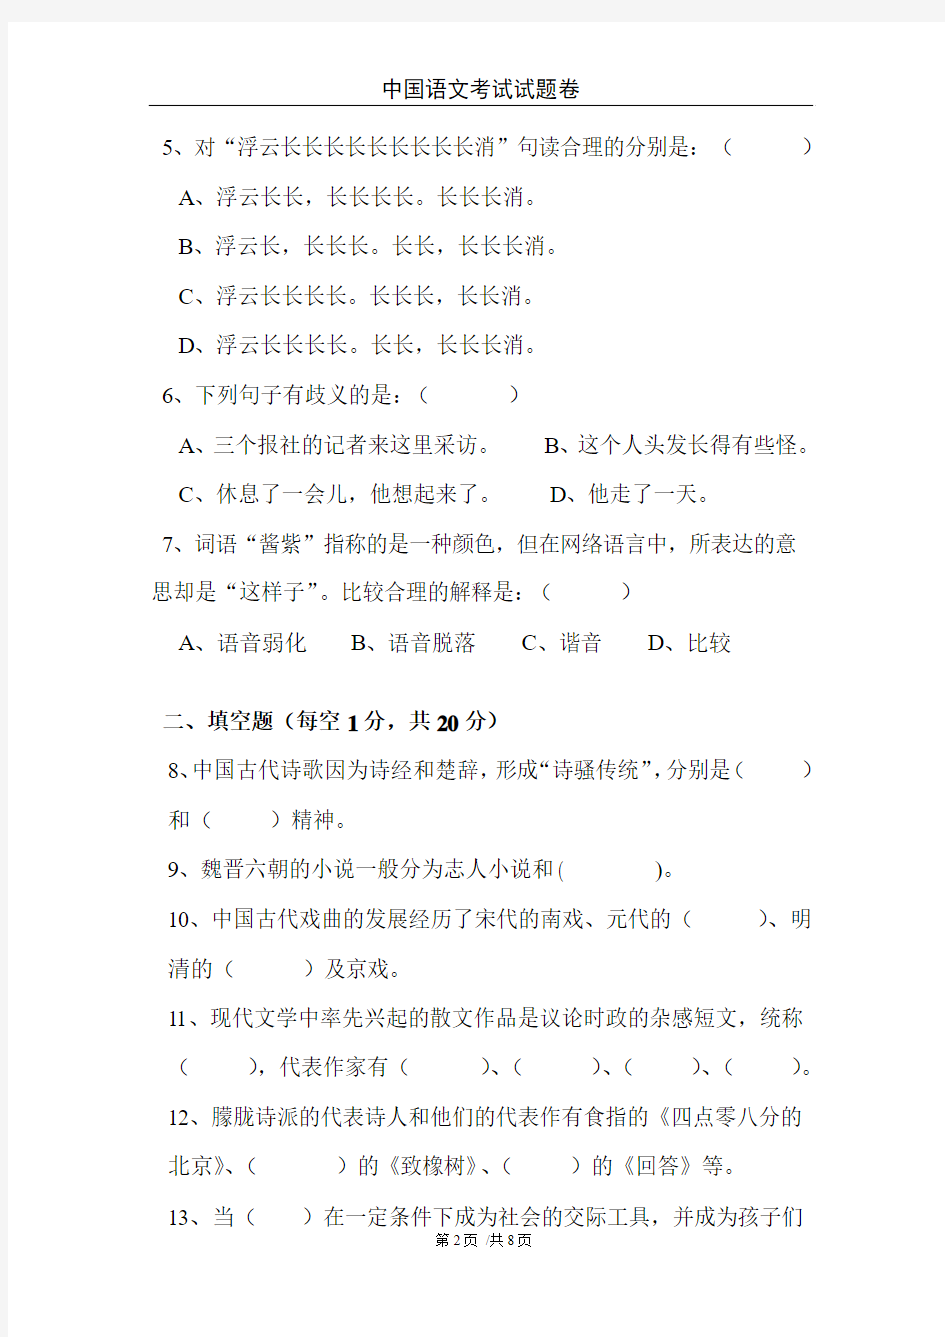 华中科技大学中国语文试题卷(B)